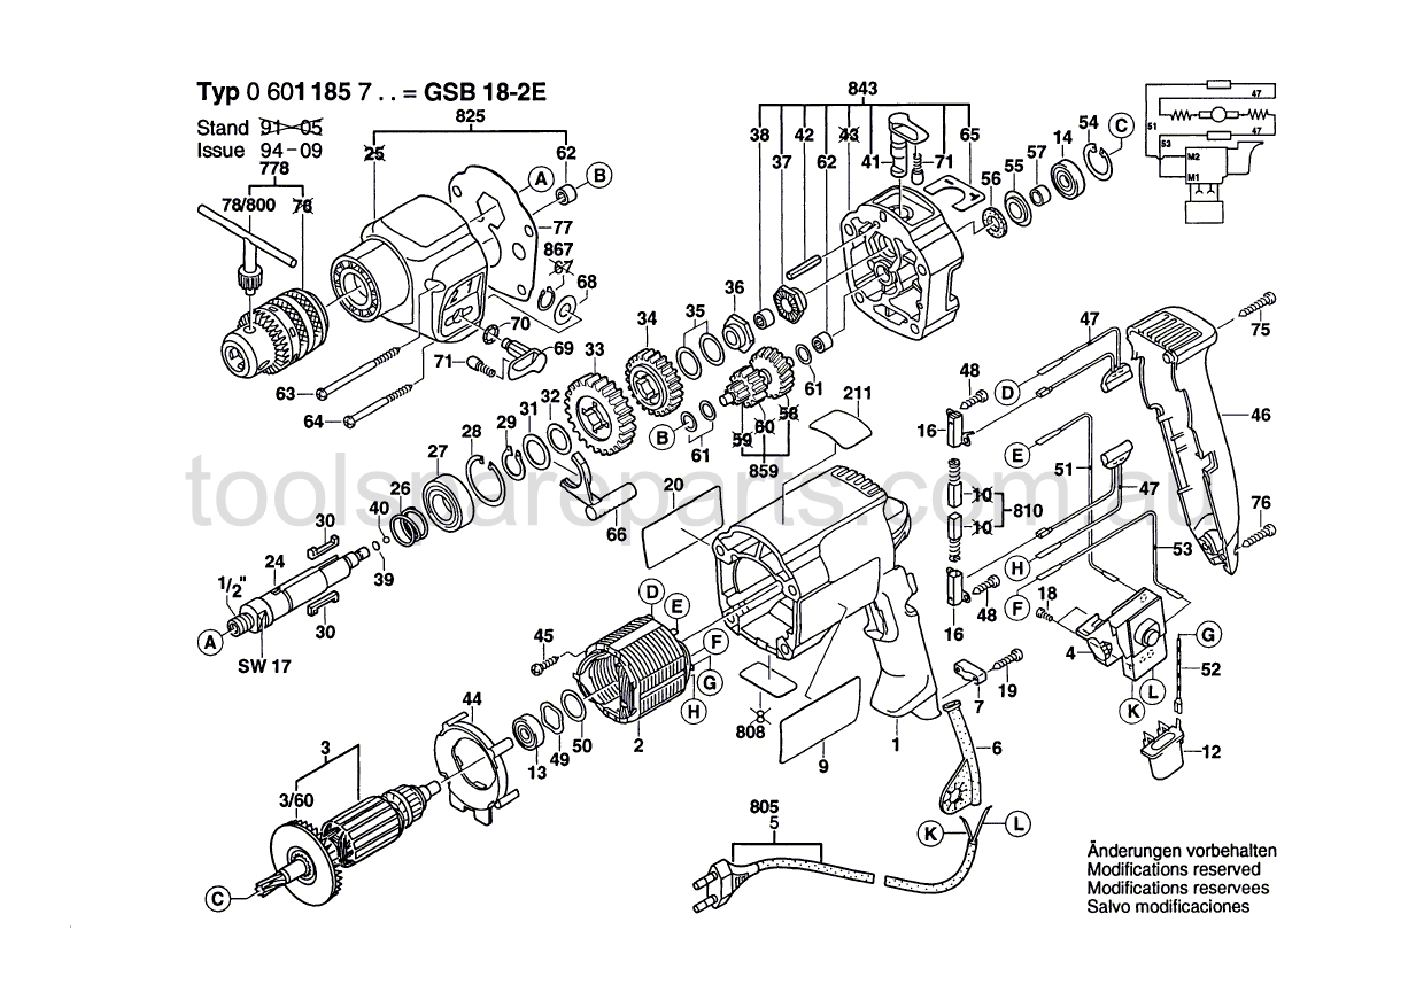 Bosch GSB 18-2 E 0601185737  Diagram 1